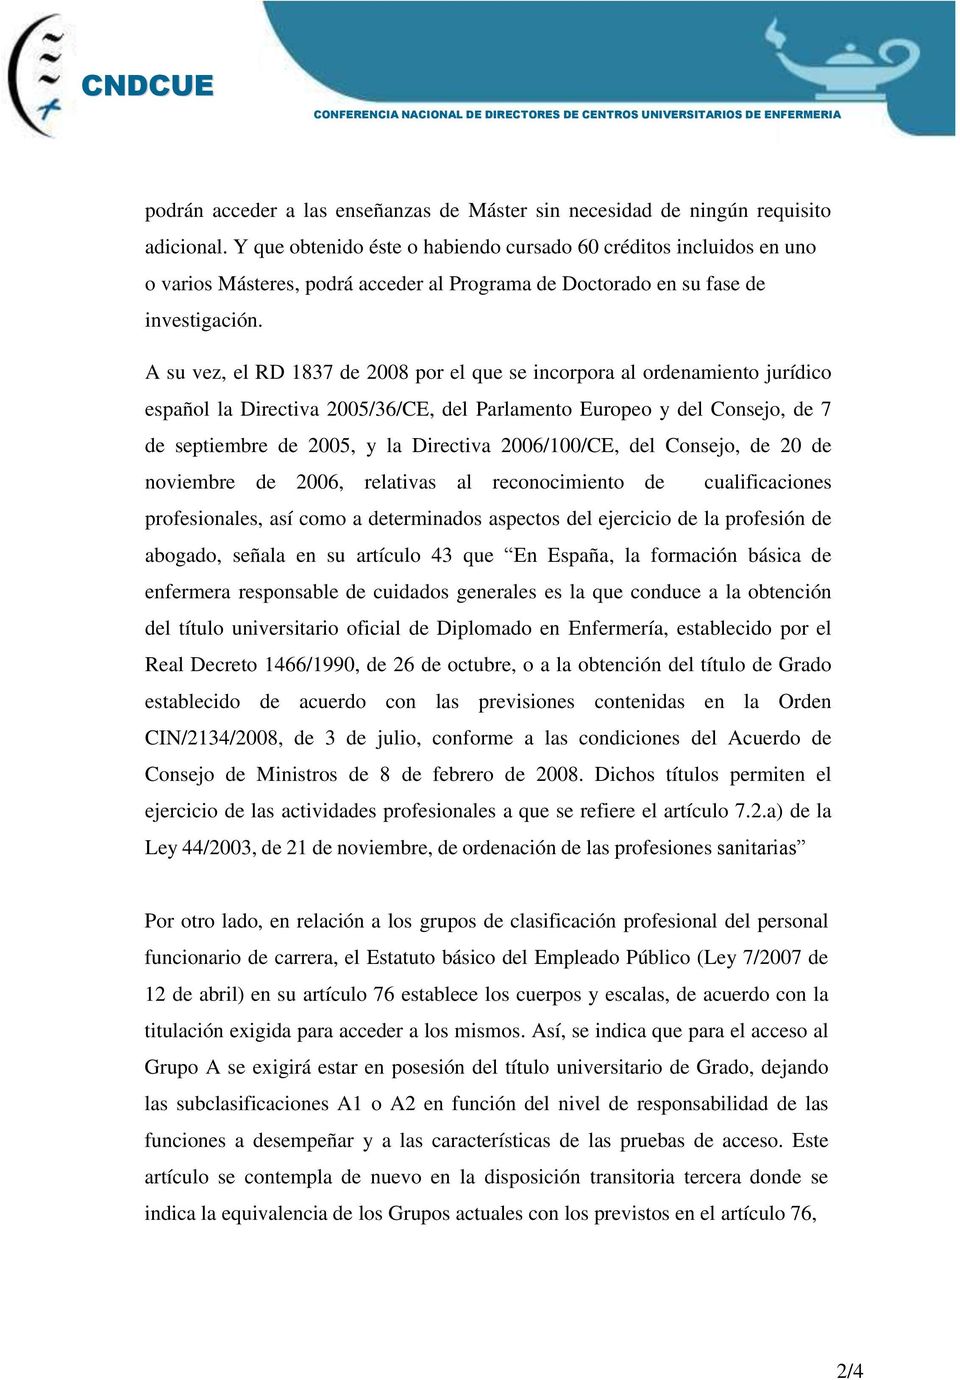 A su vez, el RD 1837 de 2008 por el que se incorpora al ordenamiento jurídico español la Directiva 2005/36/CE, del Parlamento Europeo y del Consejo, de 7 de septiembre de 2005, y la Directiva